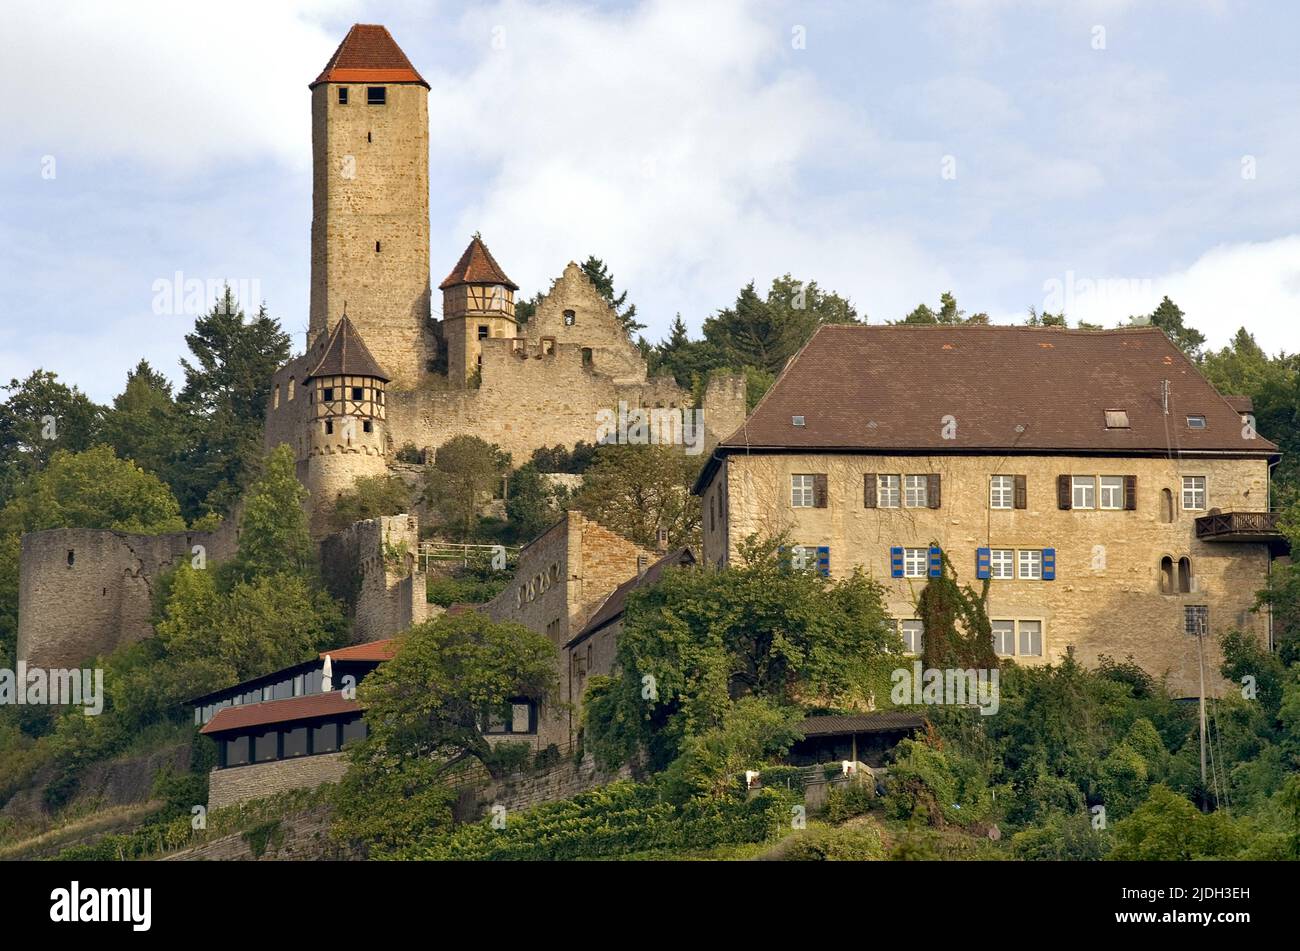 Château de Hornberg, fief de Goetz von Berlichingen, Allemagne, Bade-Wurtemberg, Neckarzimmern Banque D'Images